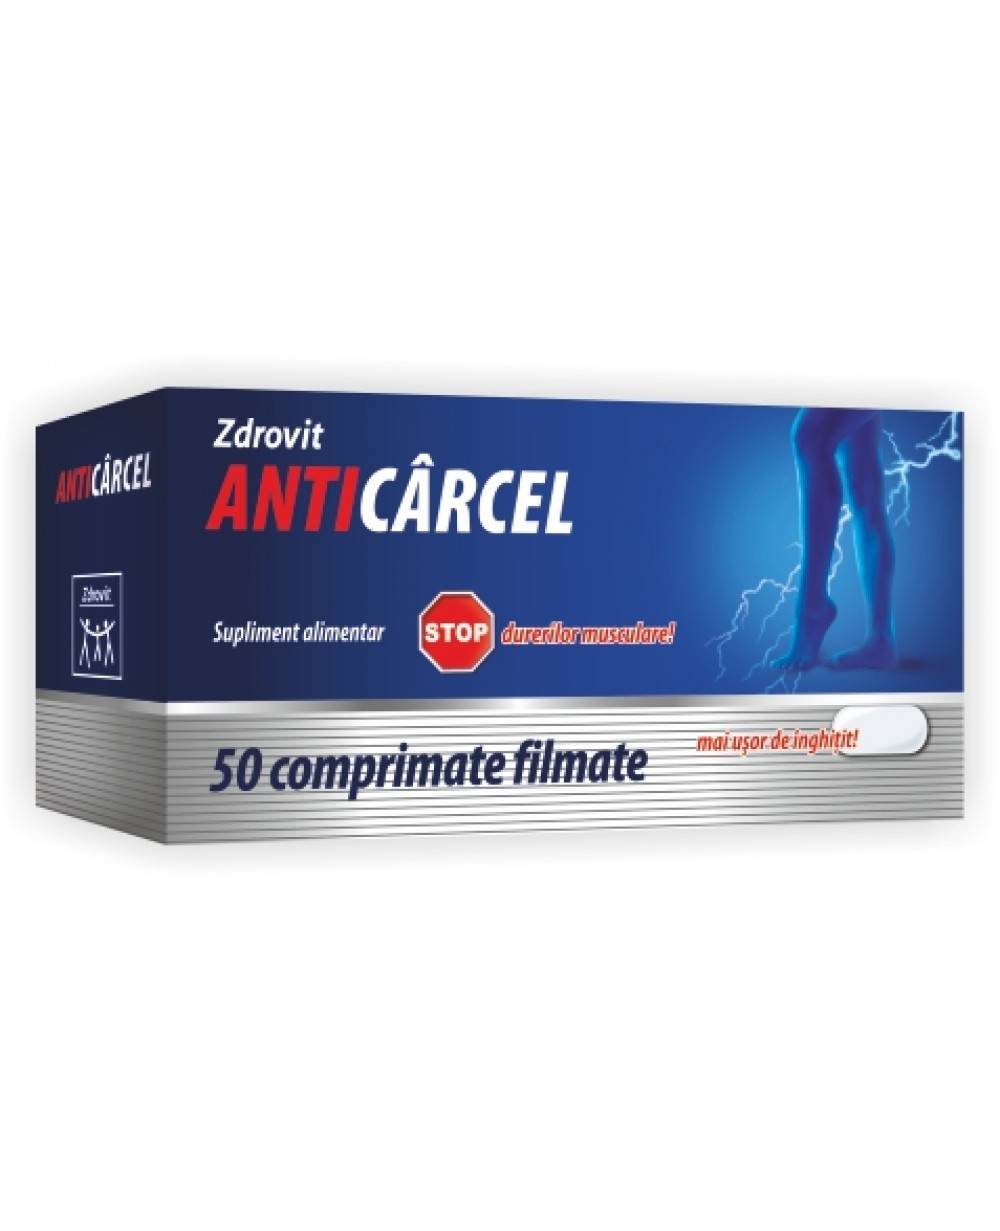 Anticarcel 50 tablete, zdrovit